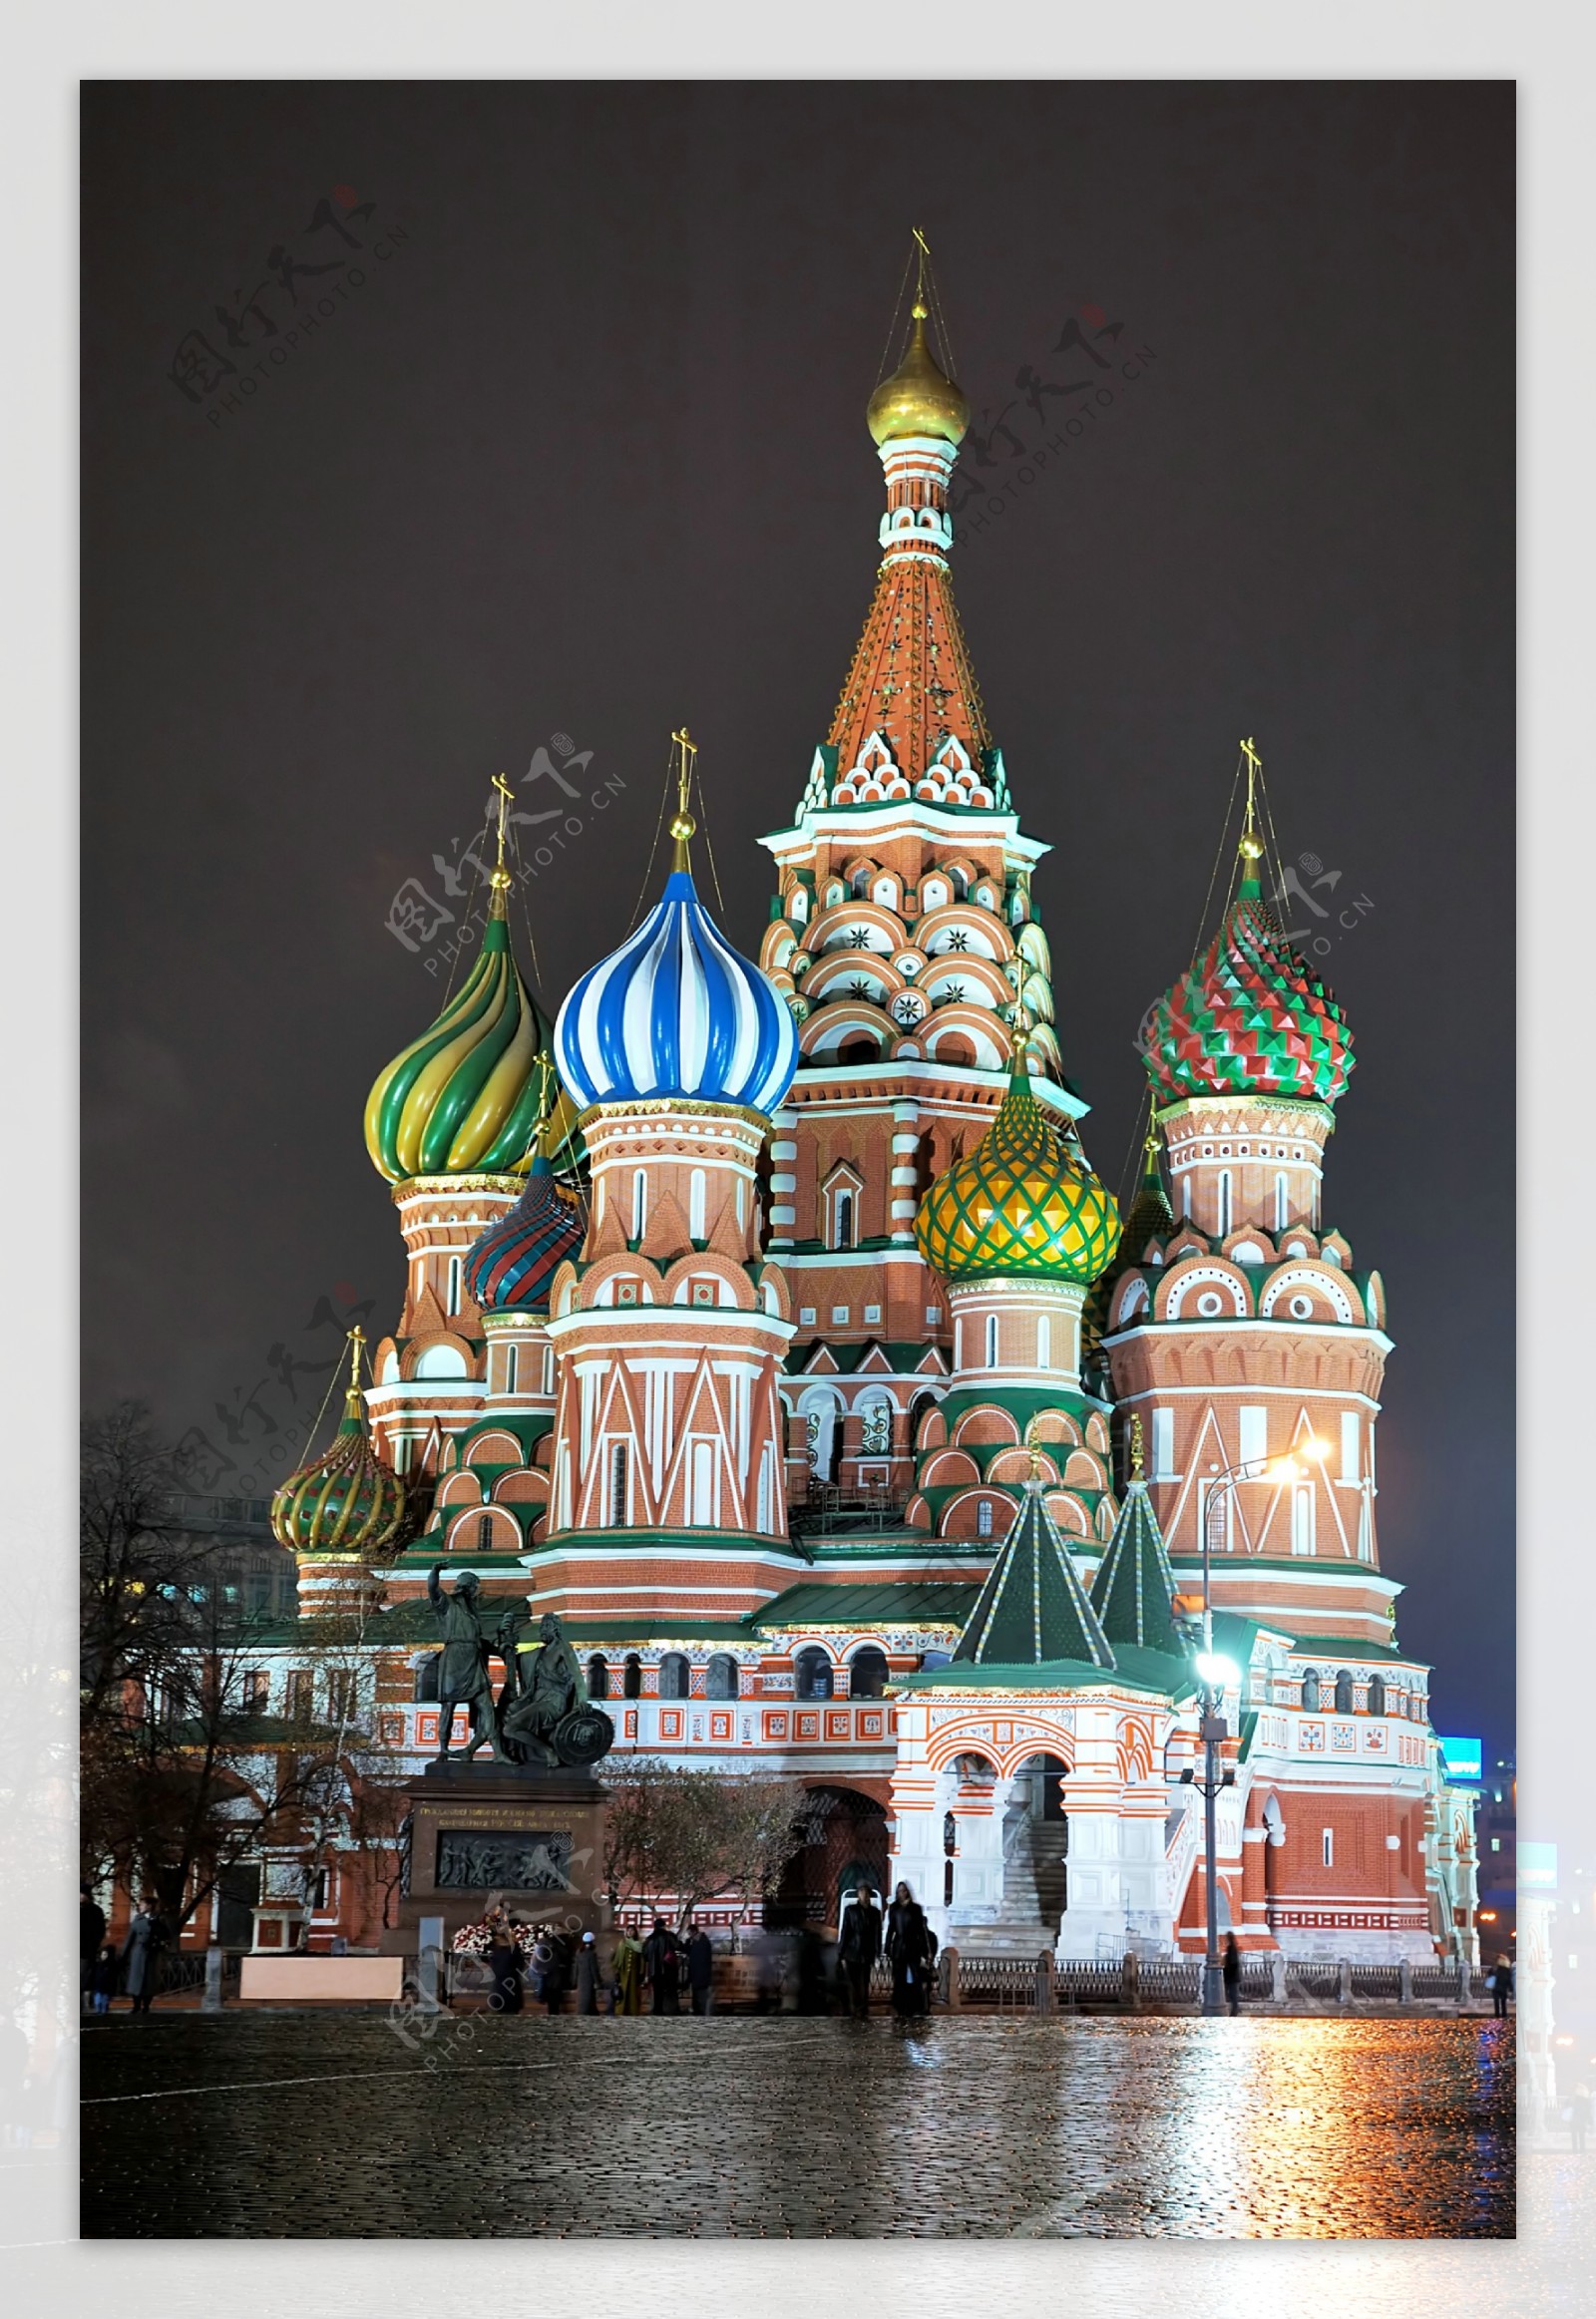 莫斯科红场美丽夜景图片